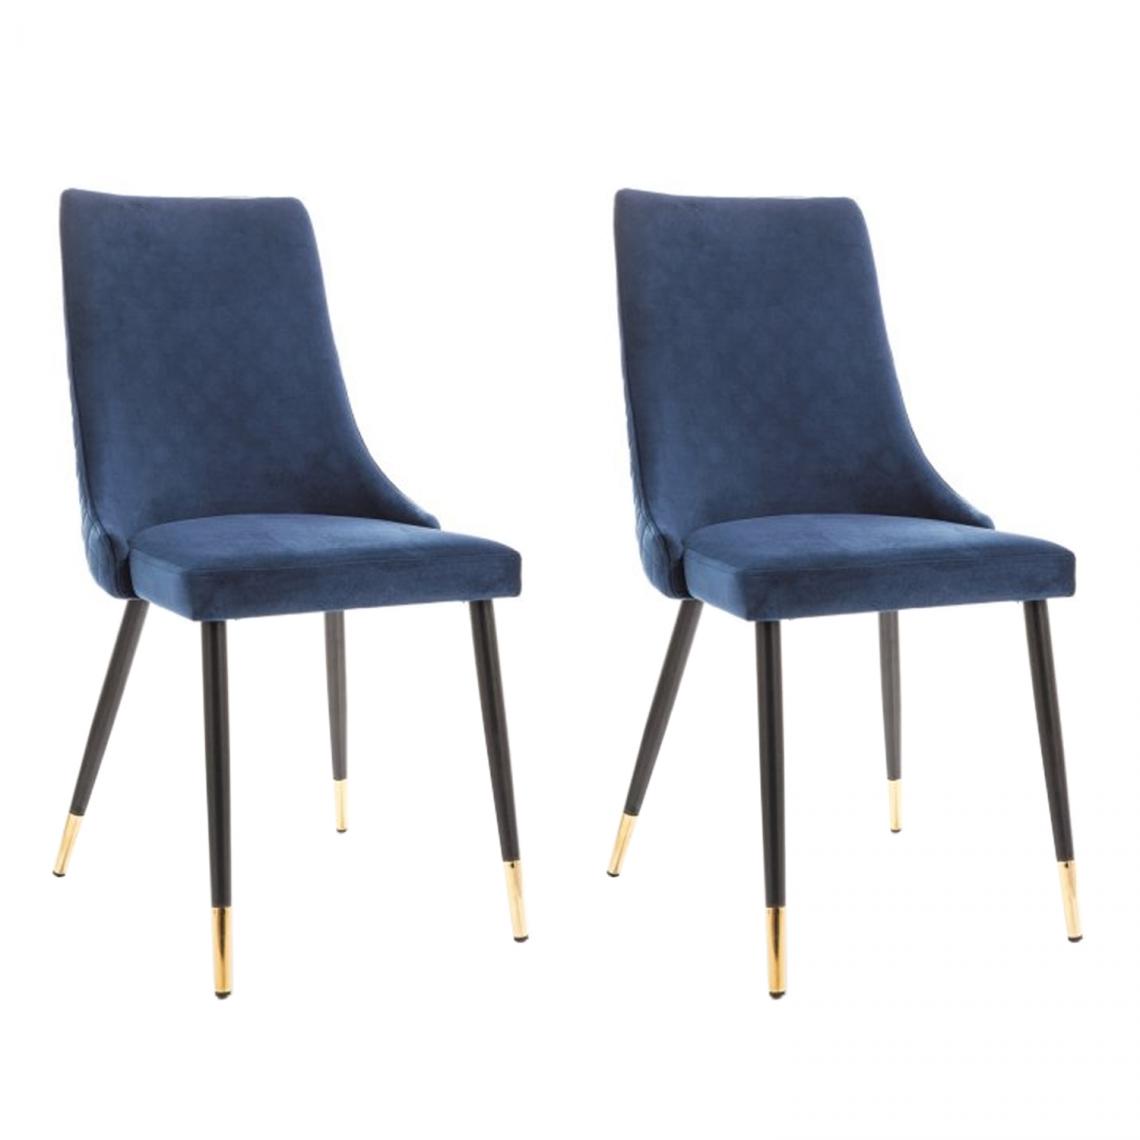 Hucoco - PIANO - Lot de 2 chaises élégantee avec coutures - Style glamour - 92x45x44 cm - Tissu velouté - Bleu - Chaises